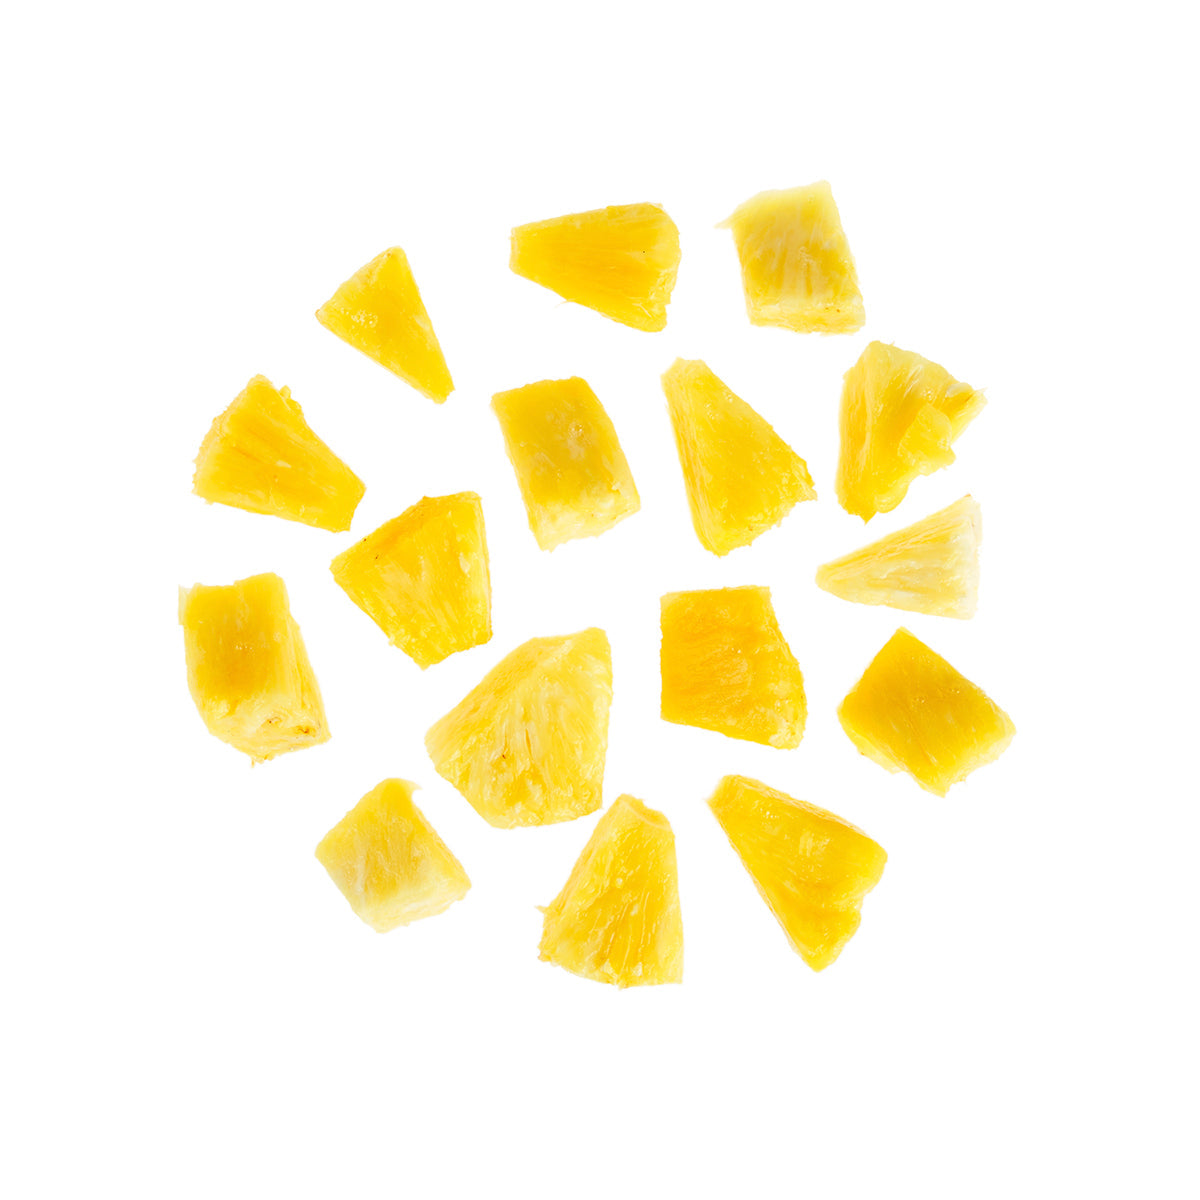 BoxNCase Frozen Pineapple Chunks